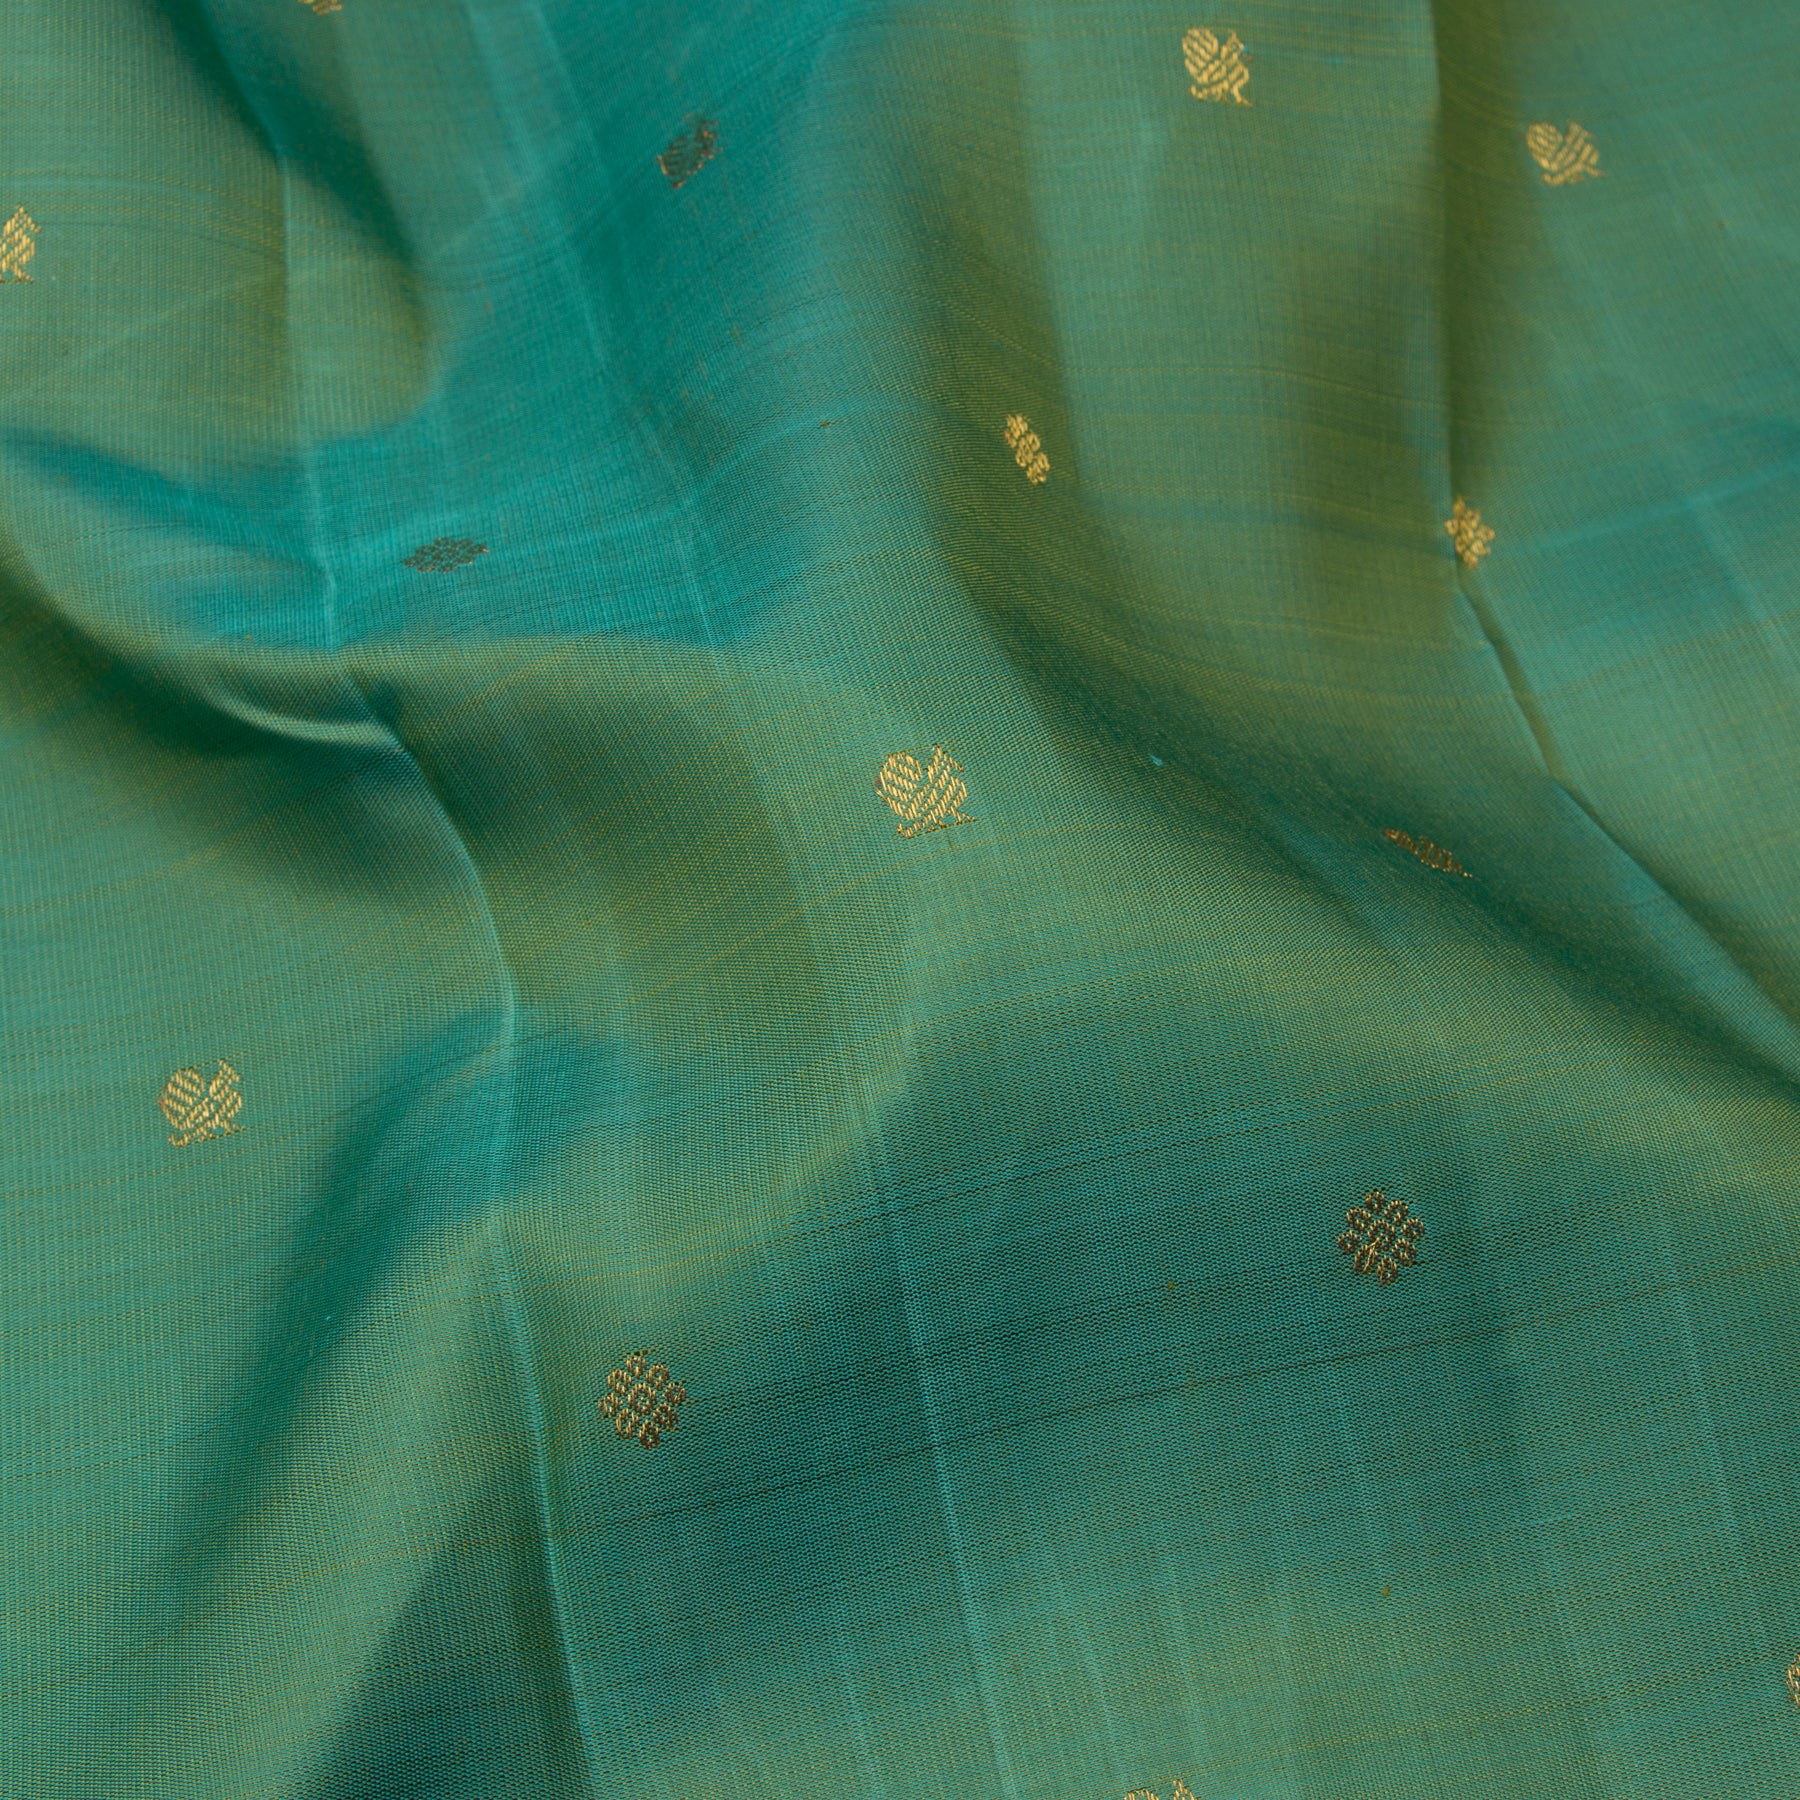 Kanakavalli Kanjivaram Silk Sari 23-110-HS001-14278 - Fabric View